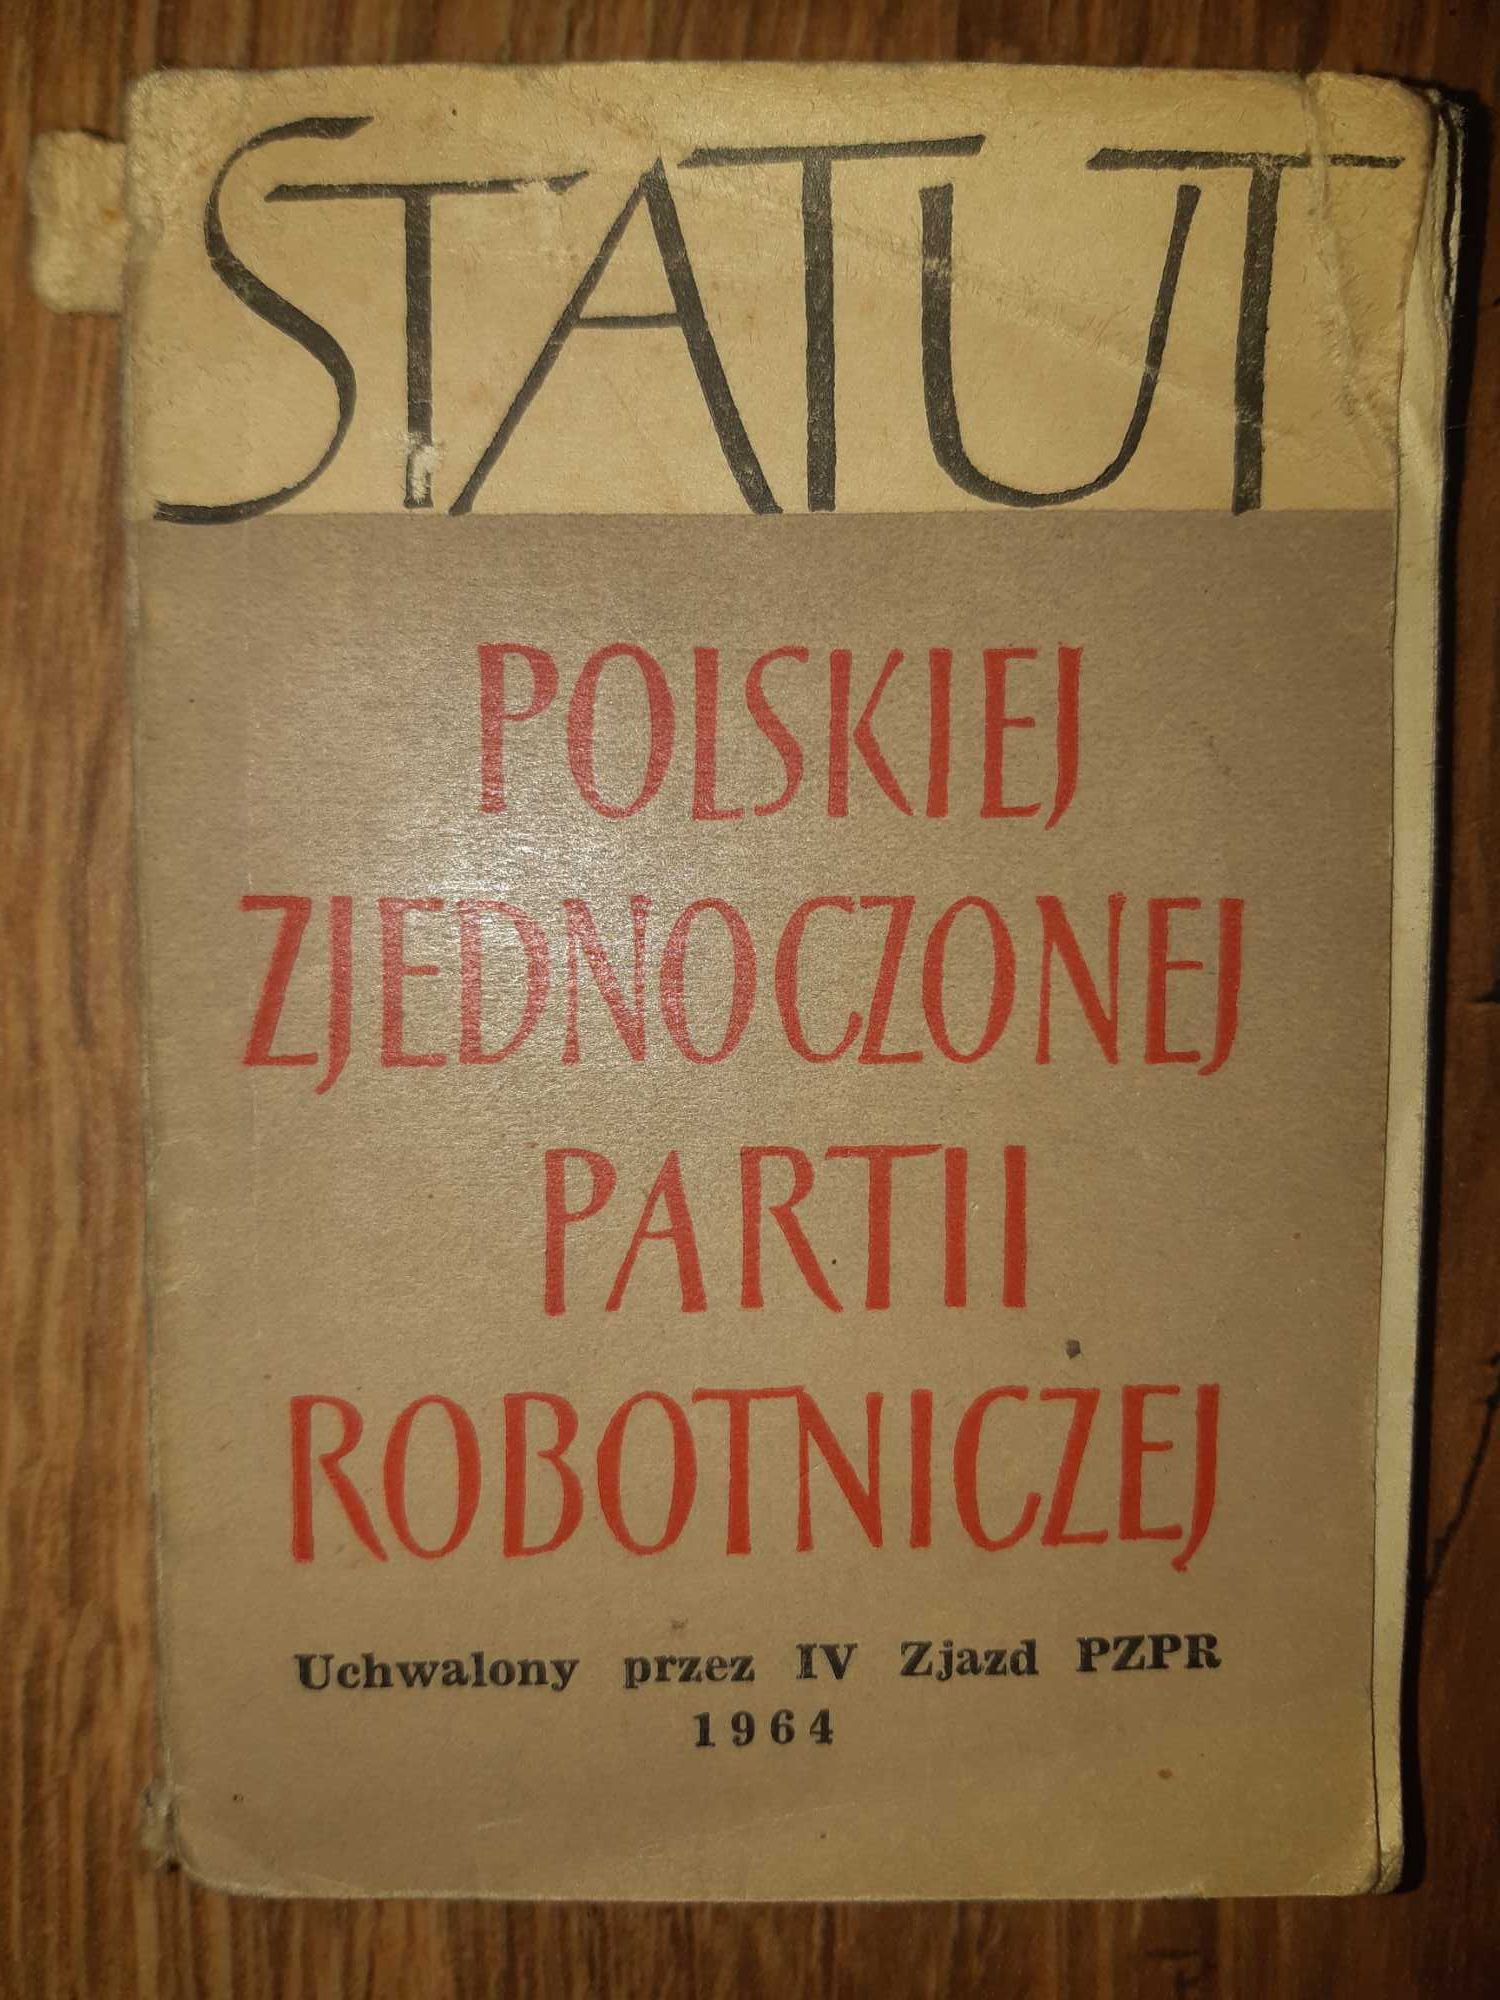 Statut Polskiej Zjednoczonej Partii Robotniczej 1964